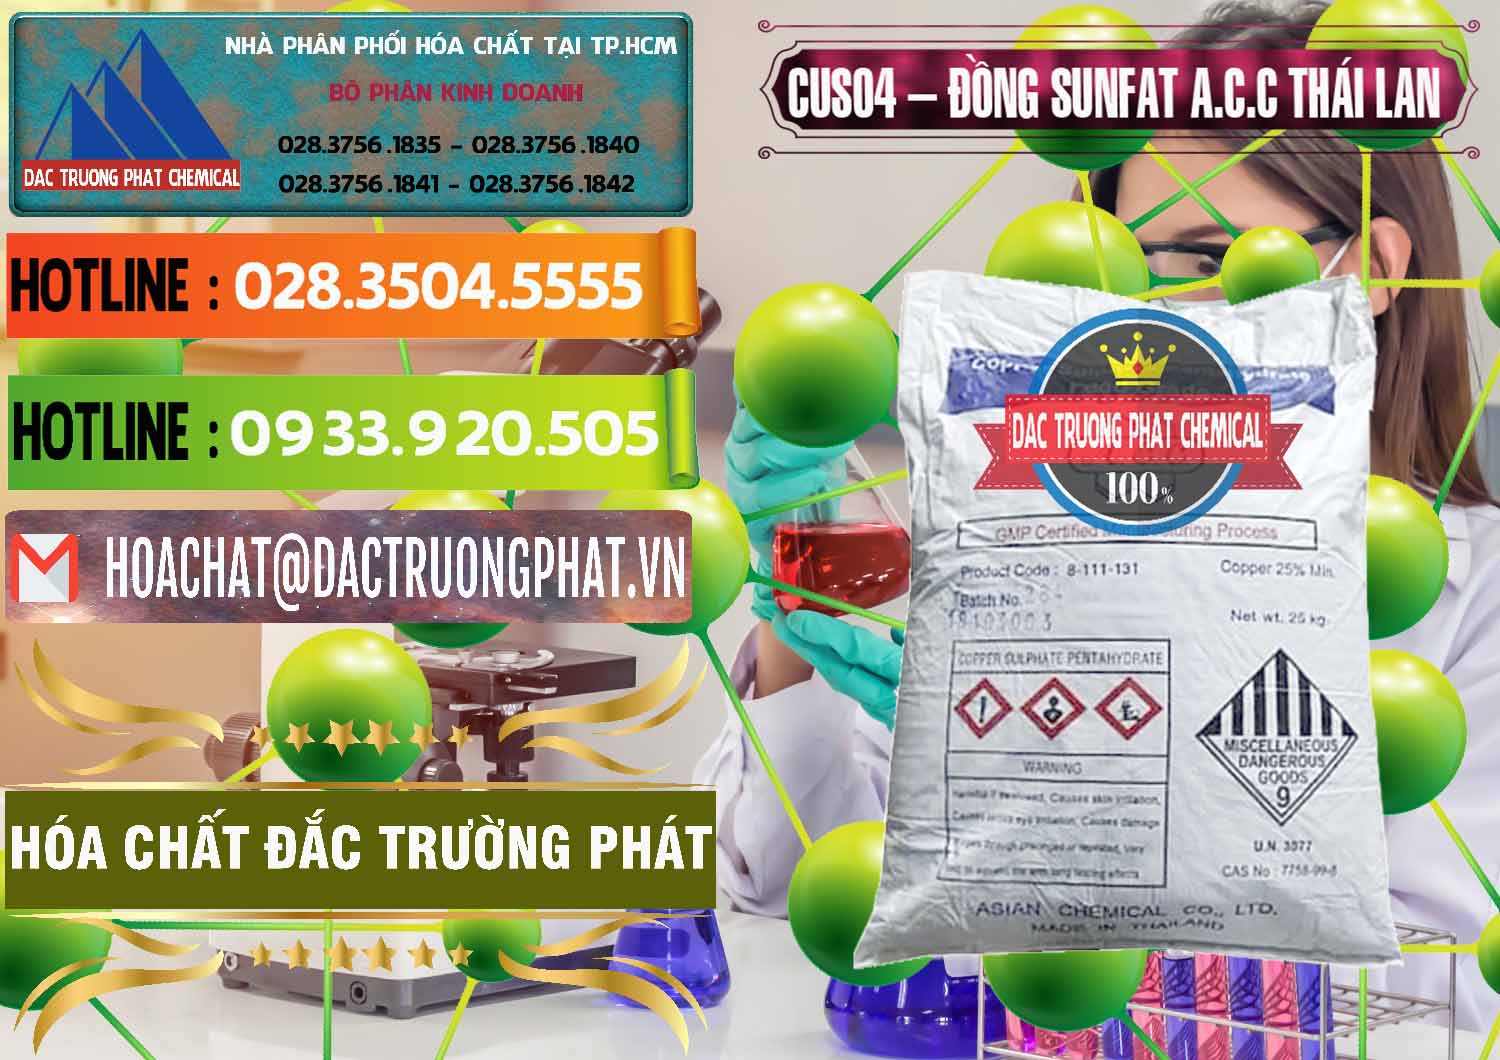 Đơn vị chuyên bán ( cung ứng ) CuSO4 – Đồng Sunfat A.C.C Thái Lan - 0249 - Cty cung cấp và bán hóa chất tại TP.HCM - cungcaphoachat.com.vn